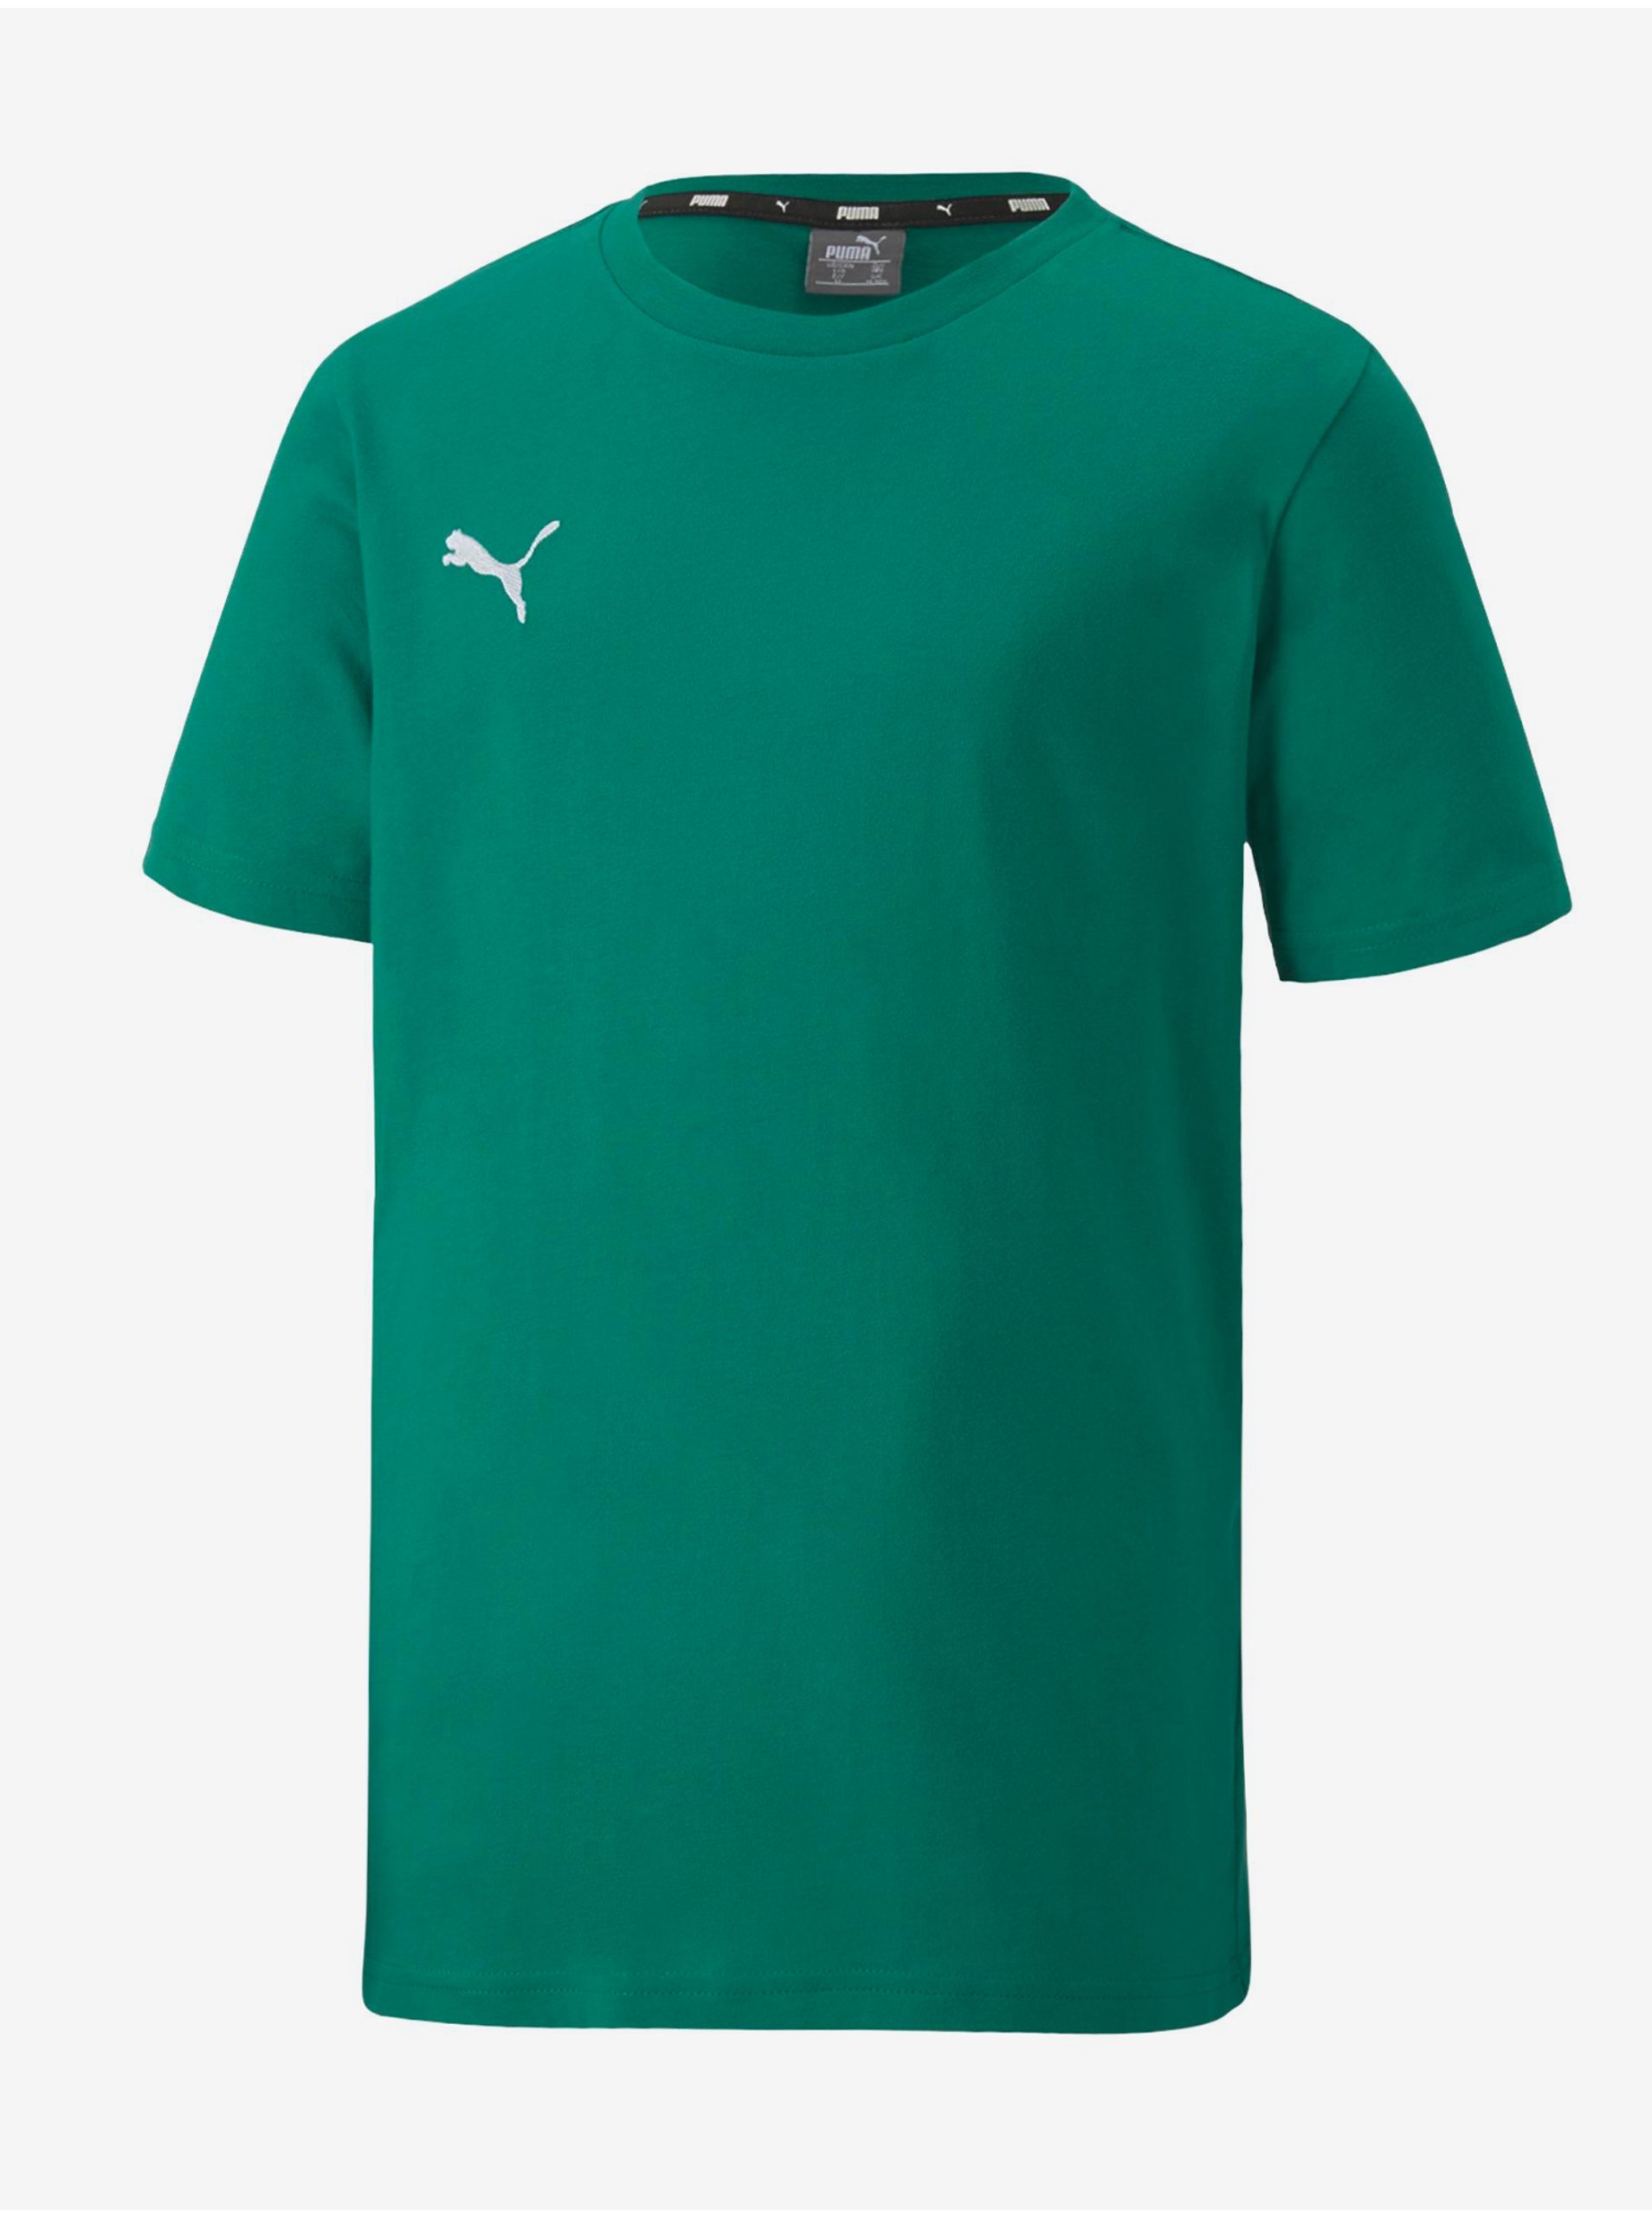 Lacno Zelené chlapčenské tričko Puma Team Goal 23